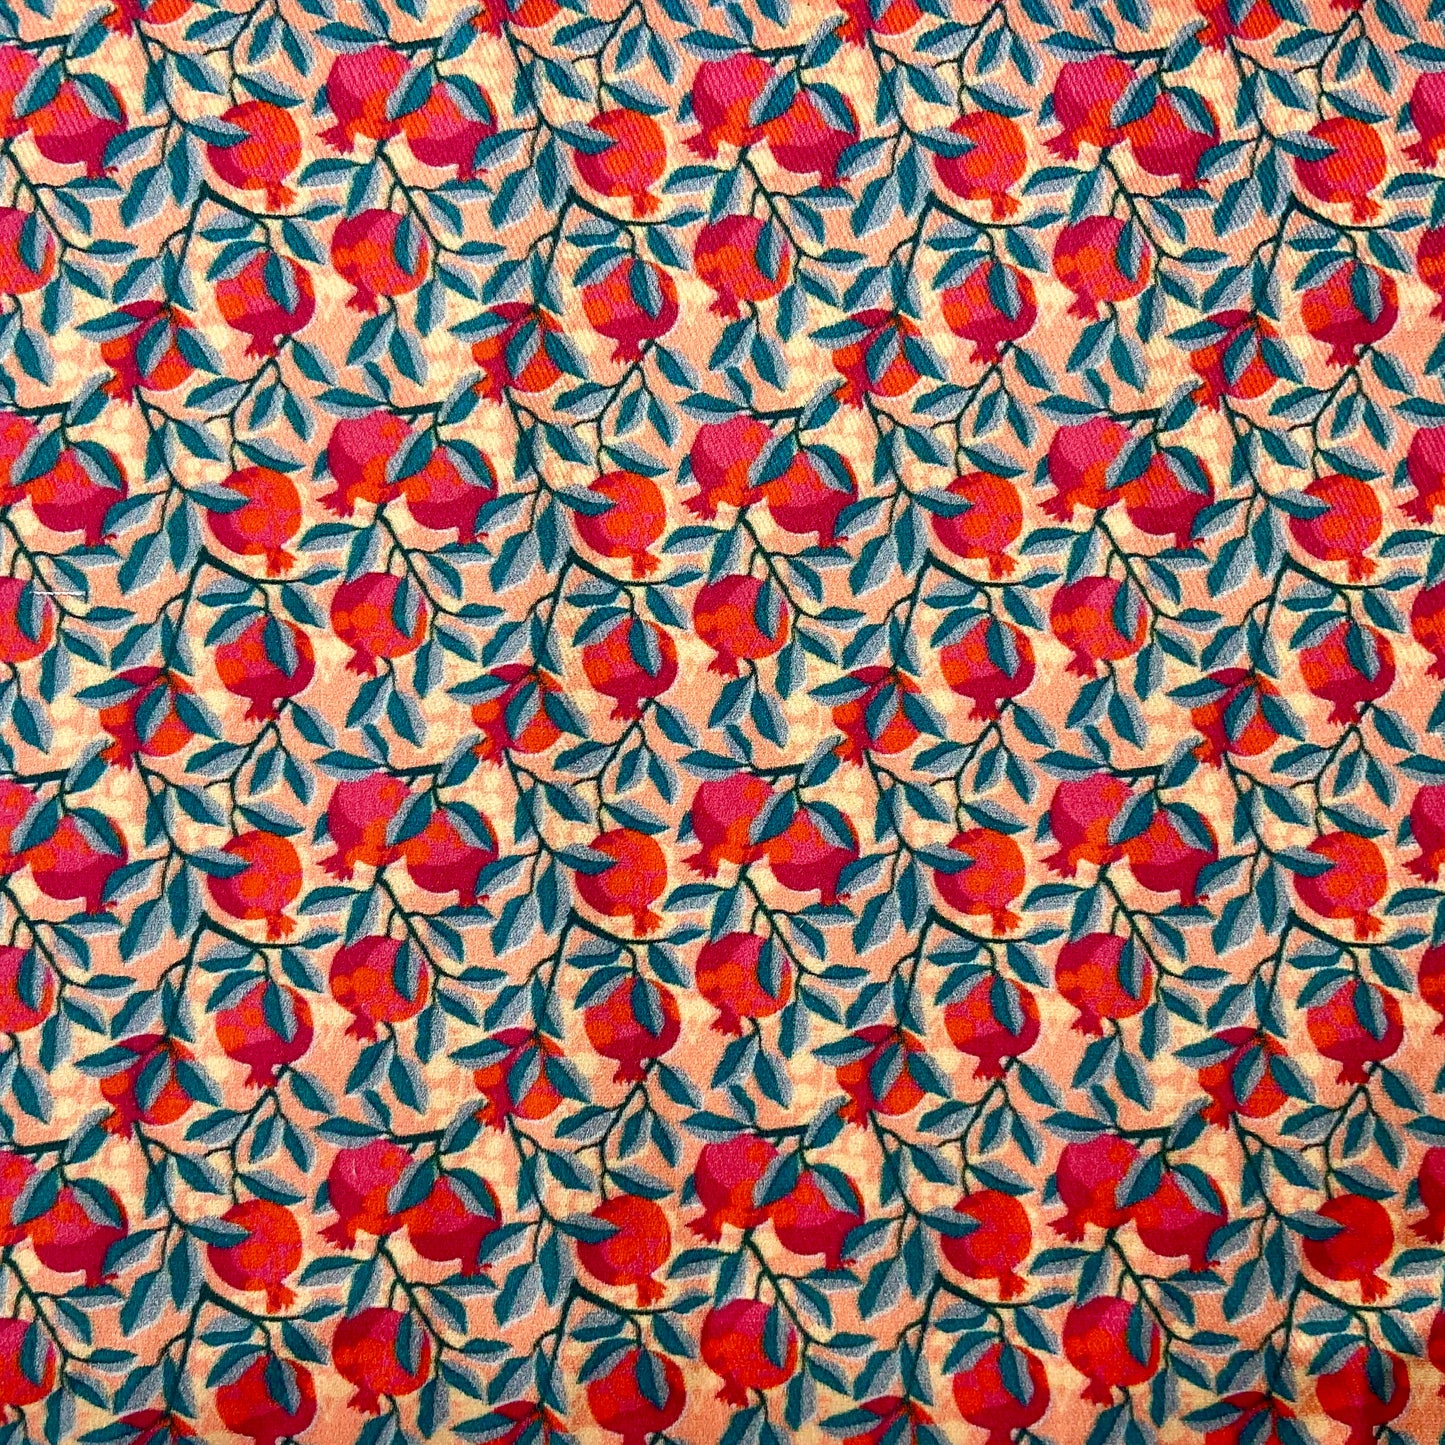 Sergé de coton imprimé motif grenades rouge orange et rose fuchsia sur fond corail feuilles bleues petits motifs adorables fleurs feuilles fruits gai coloré 